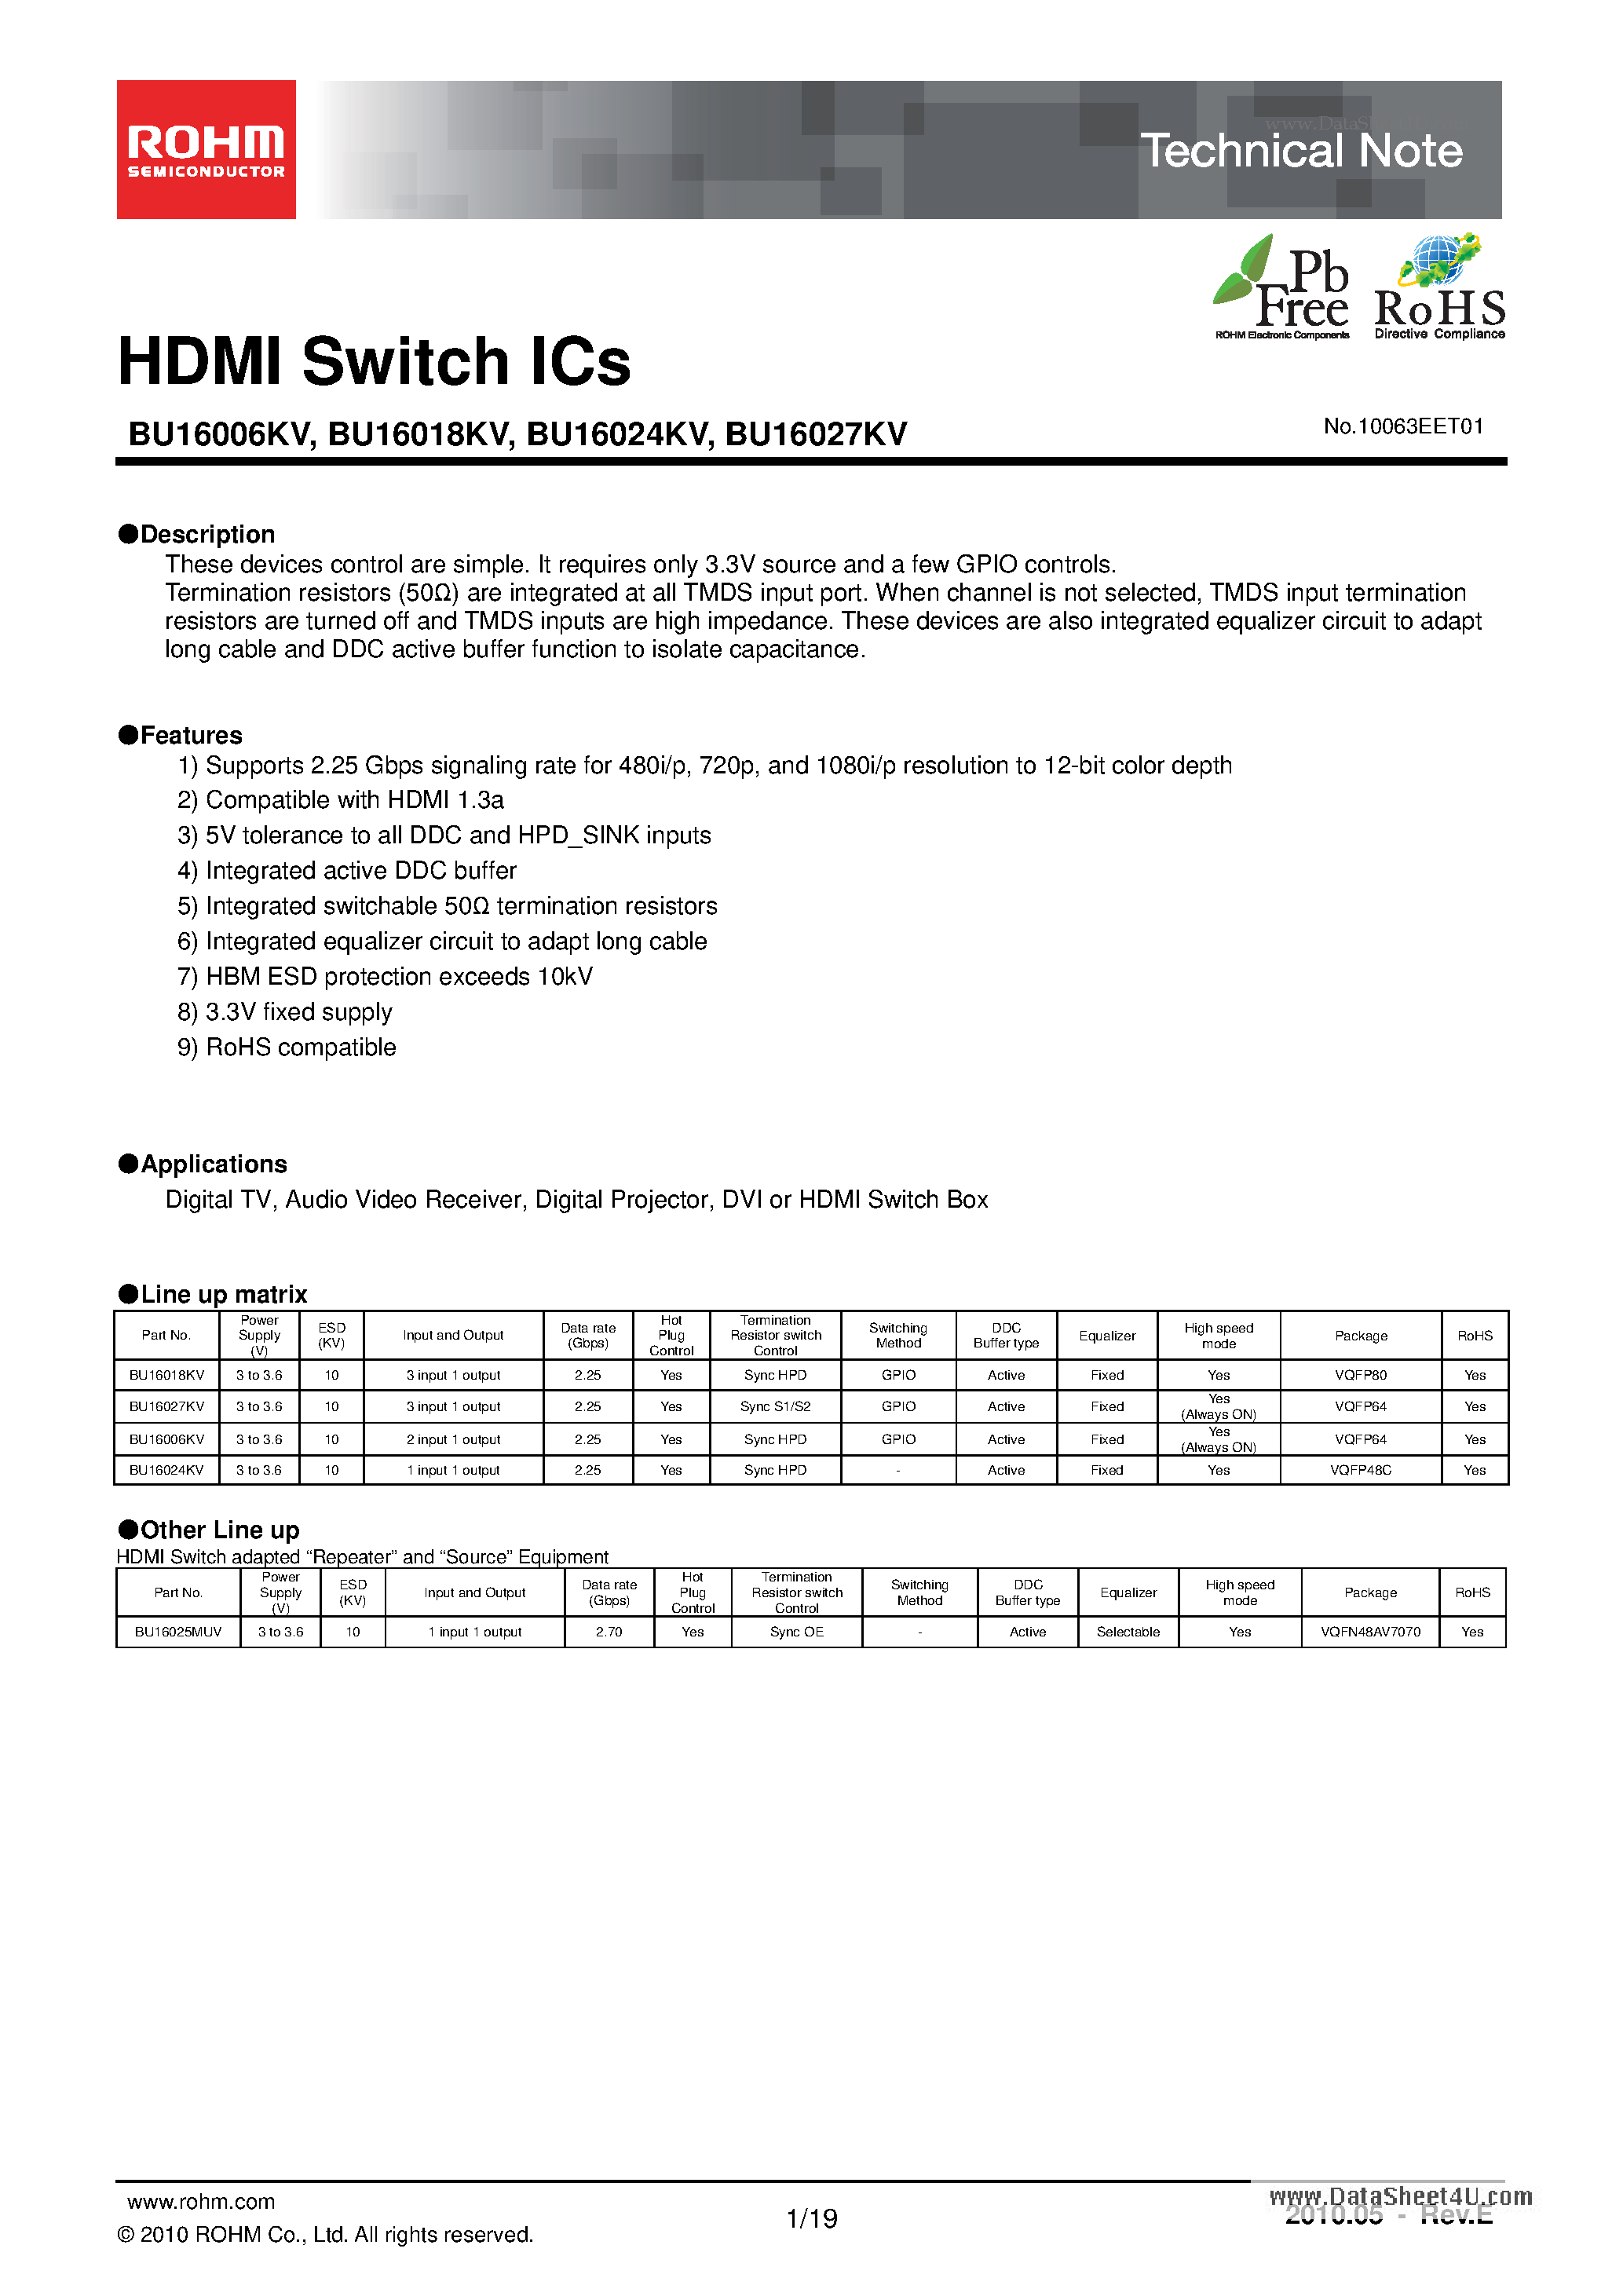 Даташит BU16018KV - HDMI Switch ICs страница 1